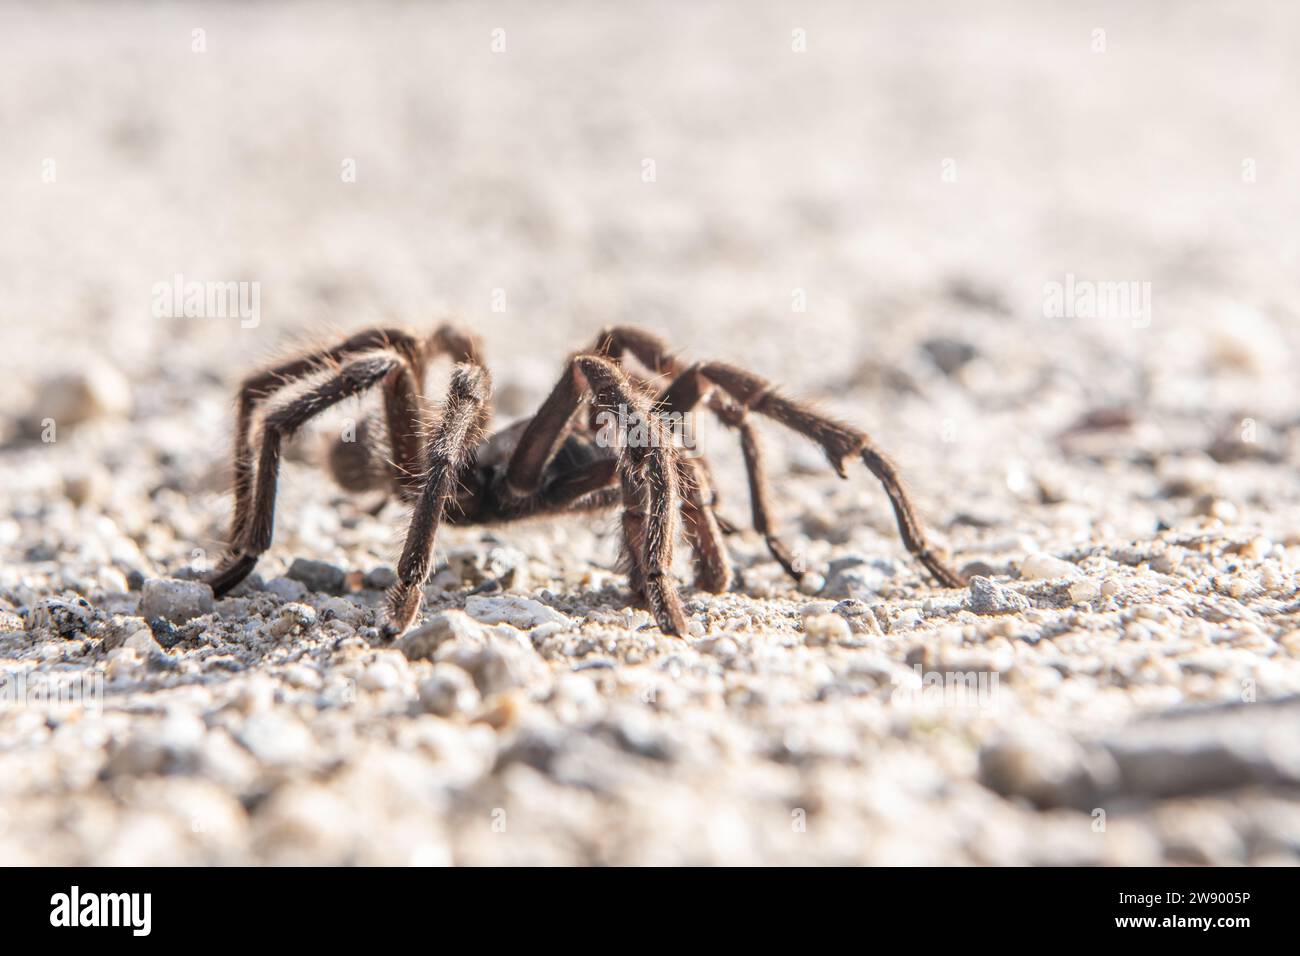 Mâle Desert Tarentula, Aphonopelma iodius, traversant une route pendant la migration des araignées où ils viennent en plein air pour chercher des compagnons en Californie. Banque D'Images